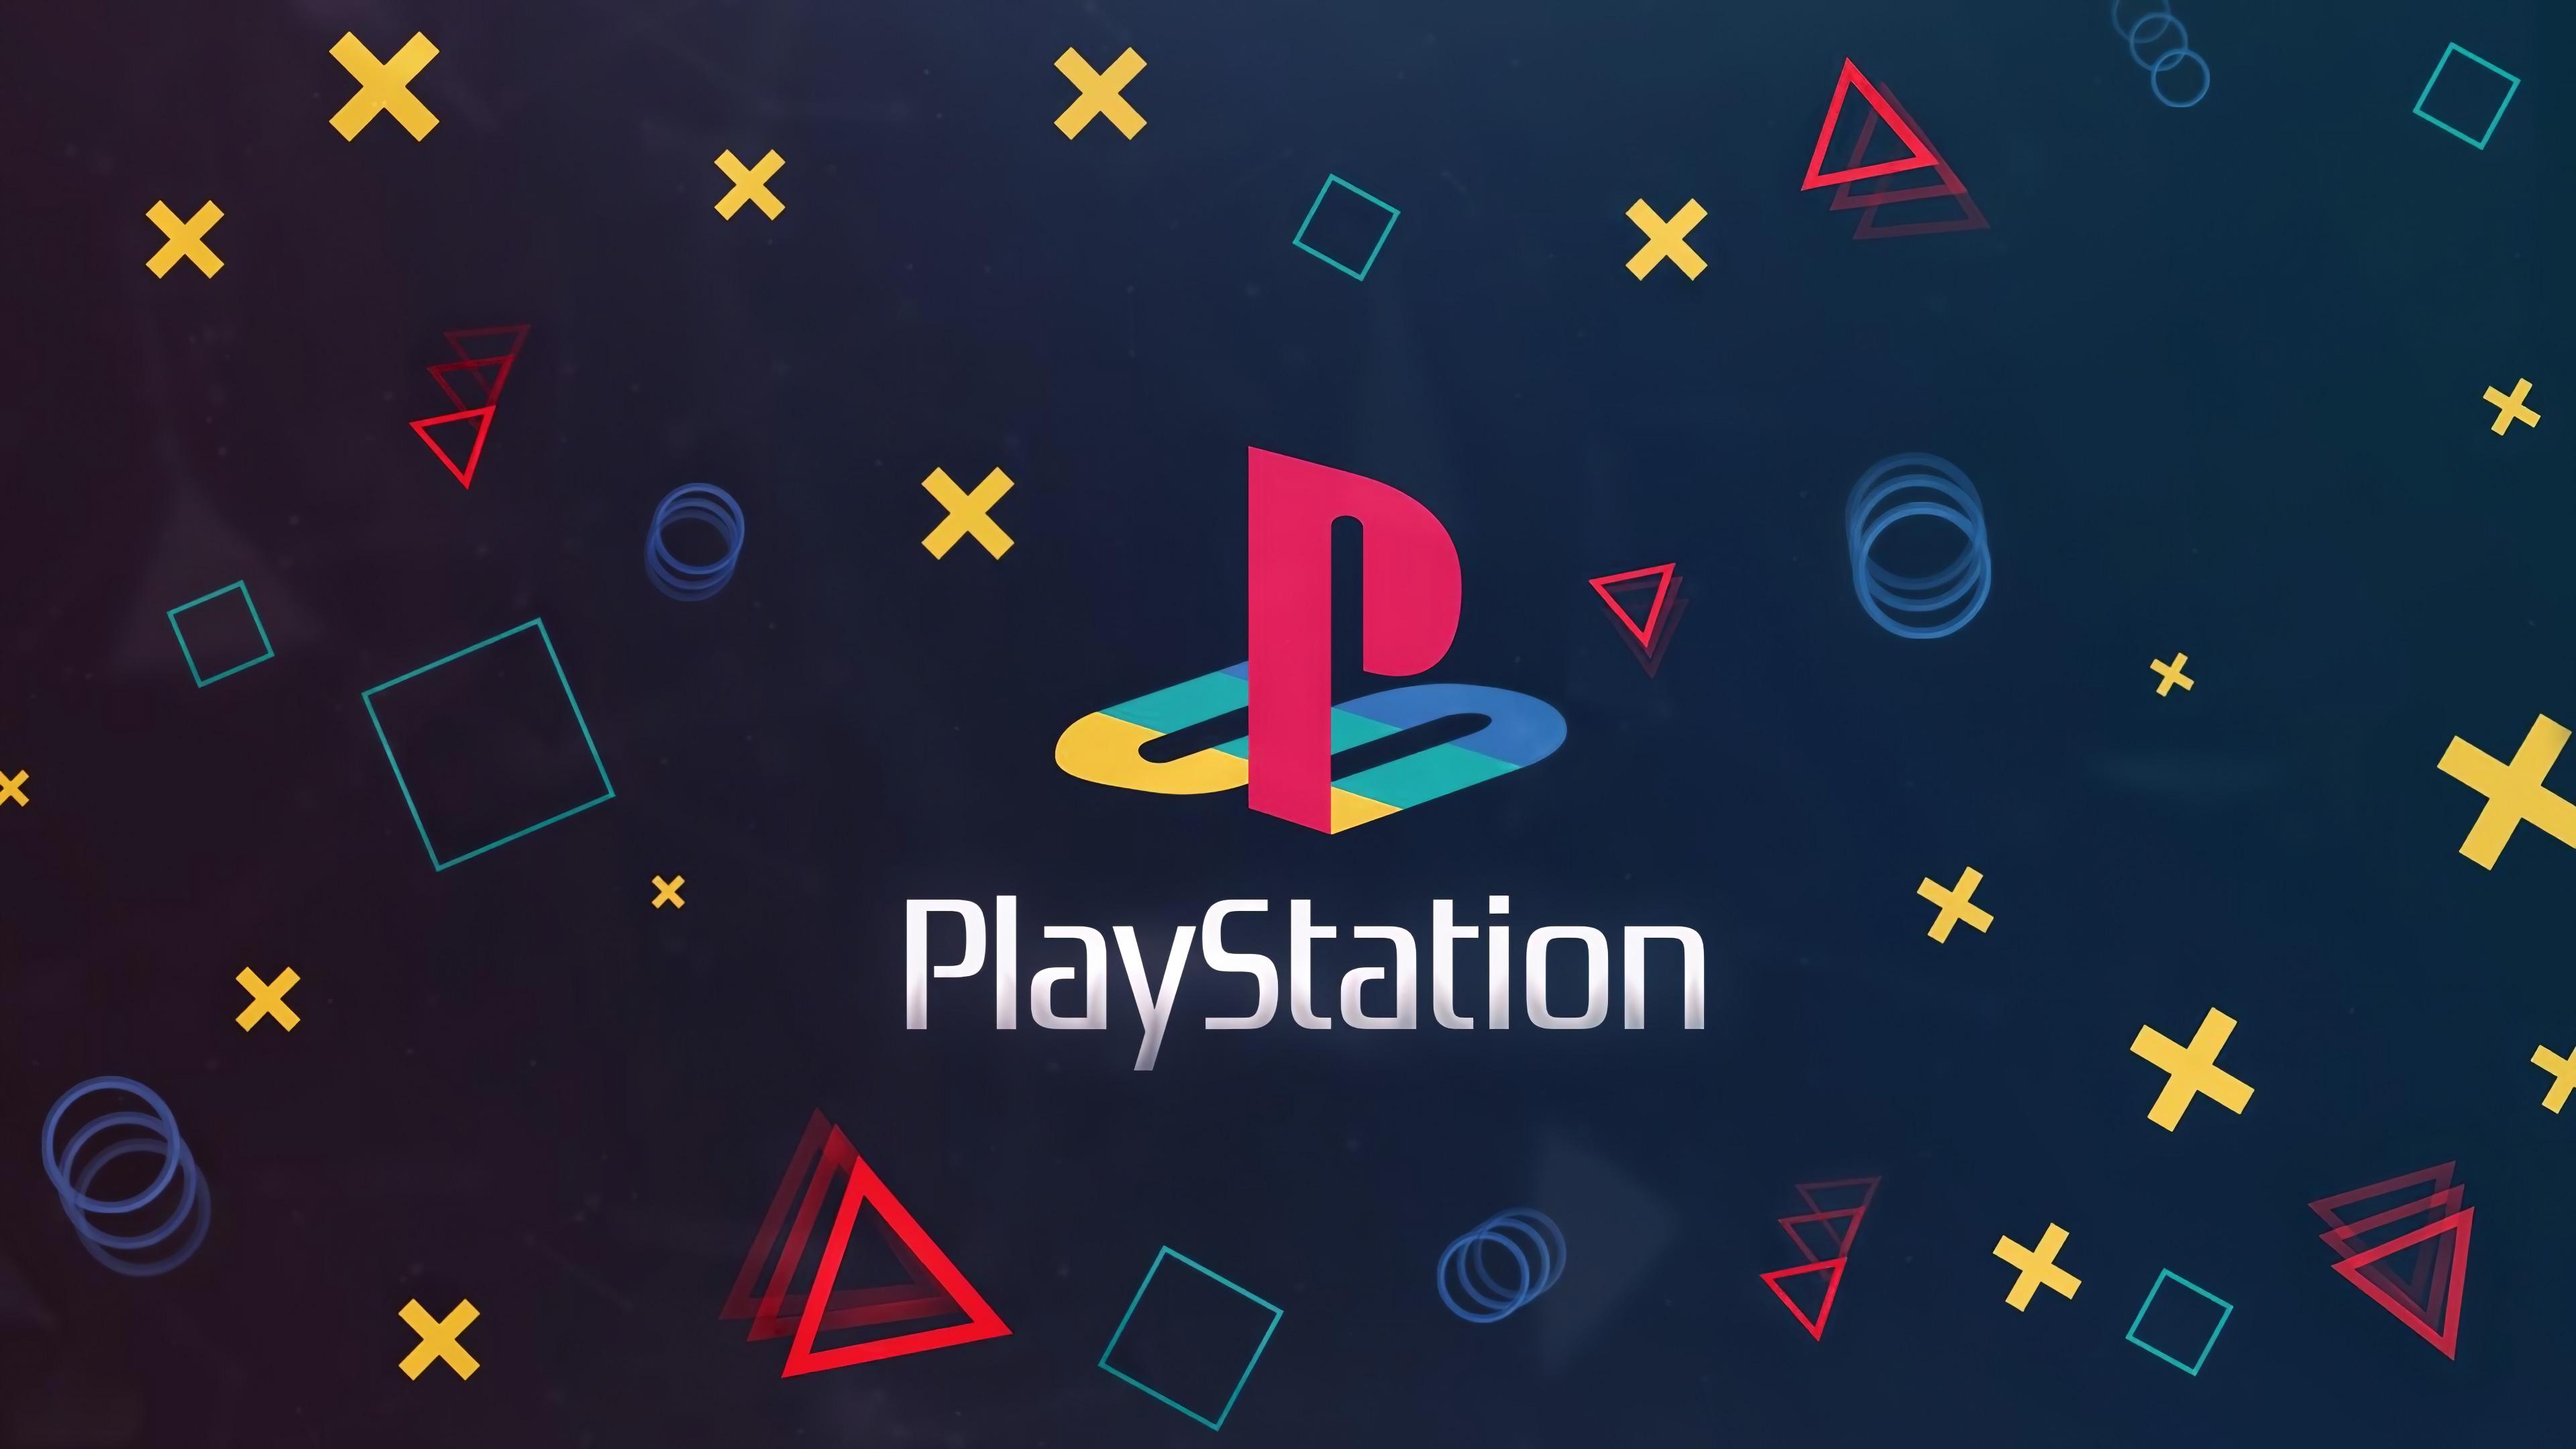 PlayStation-logo på mørk baggrund med forskellige controller-knapper.